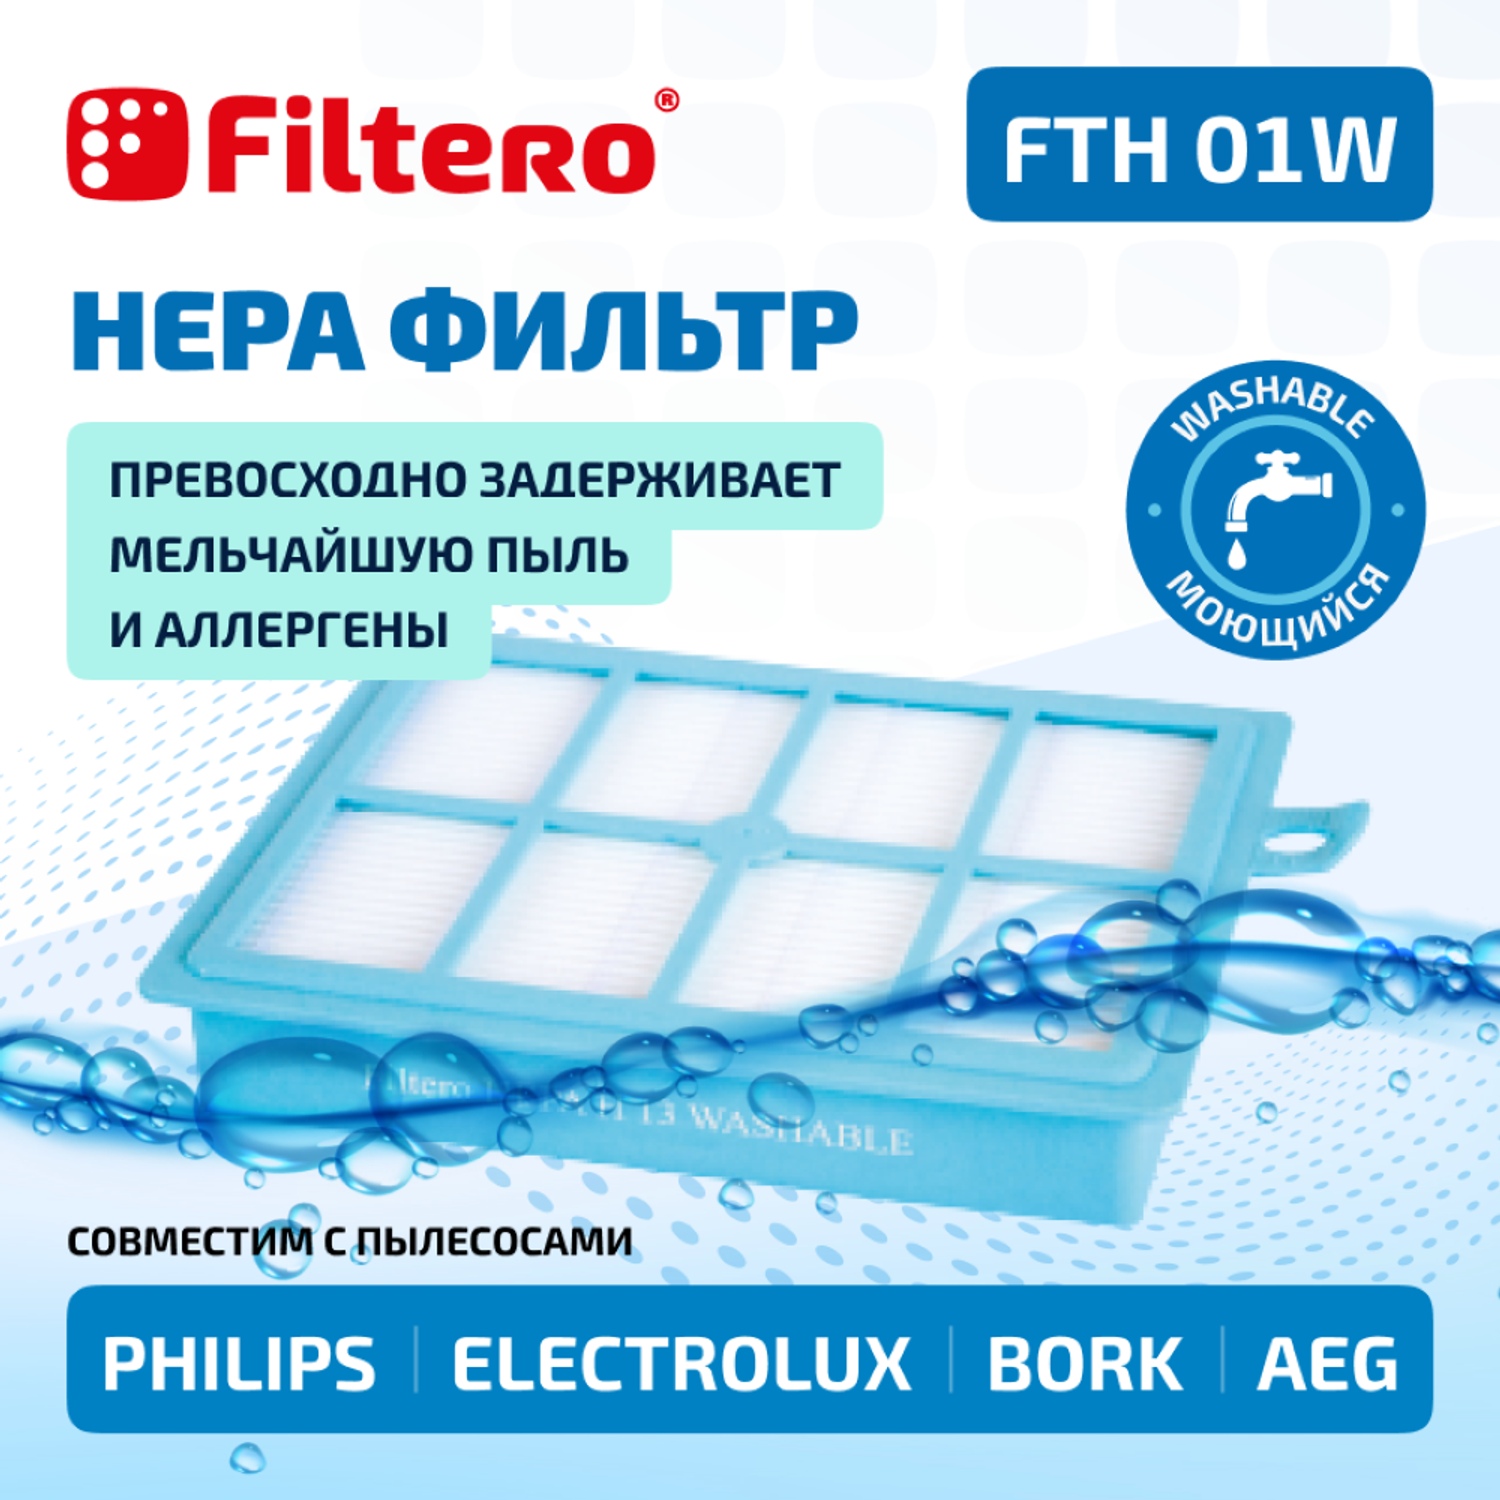 Фильтр HEPA Filtero для пылесосов Electrolux и Philips FTH 01 W Elx моющийся - фото 1